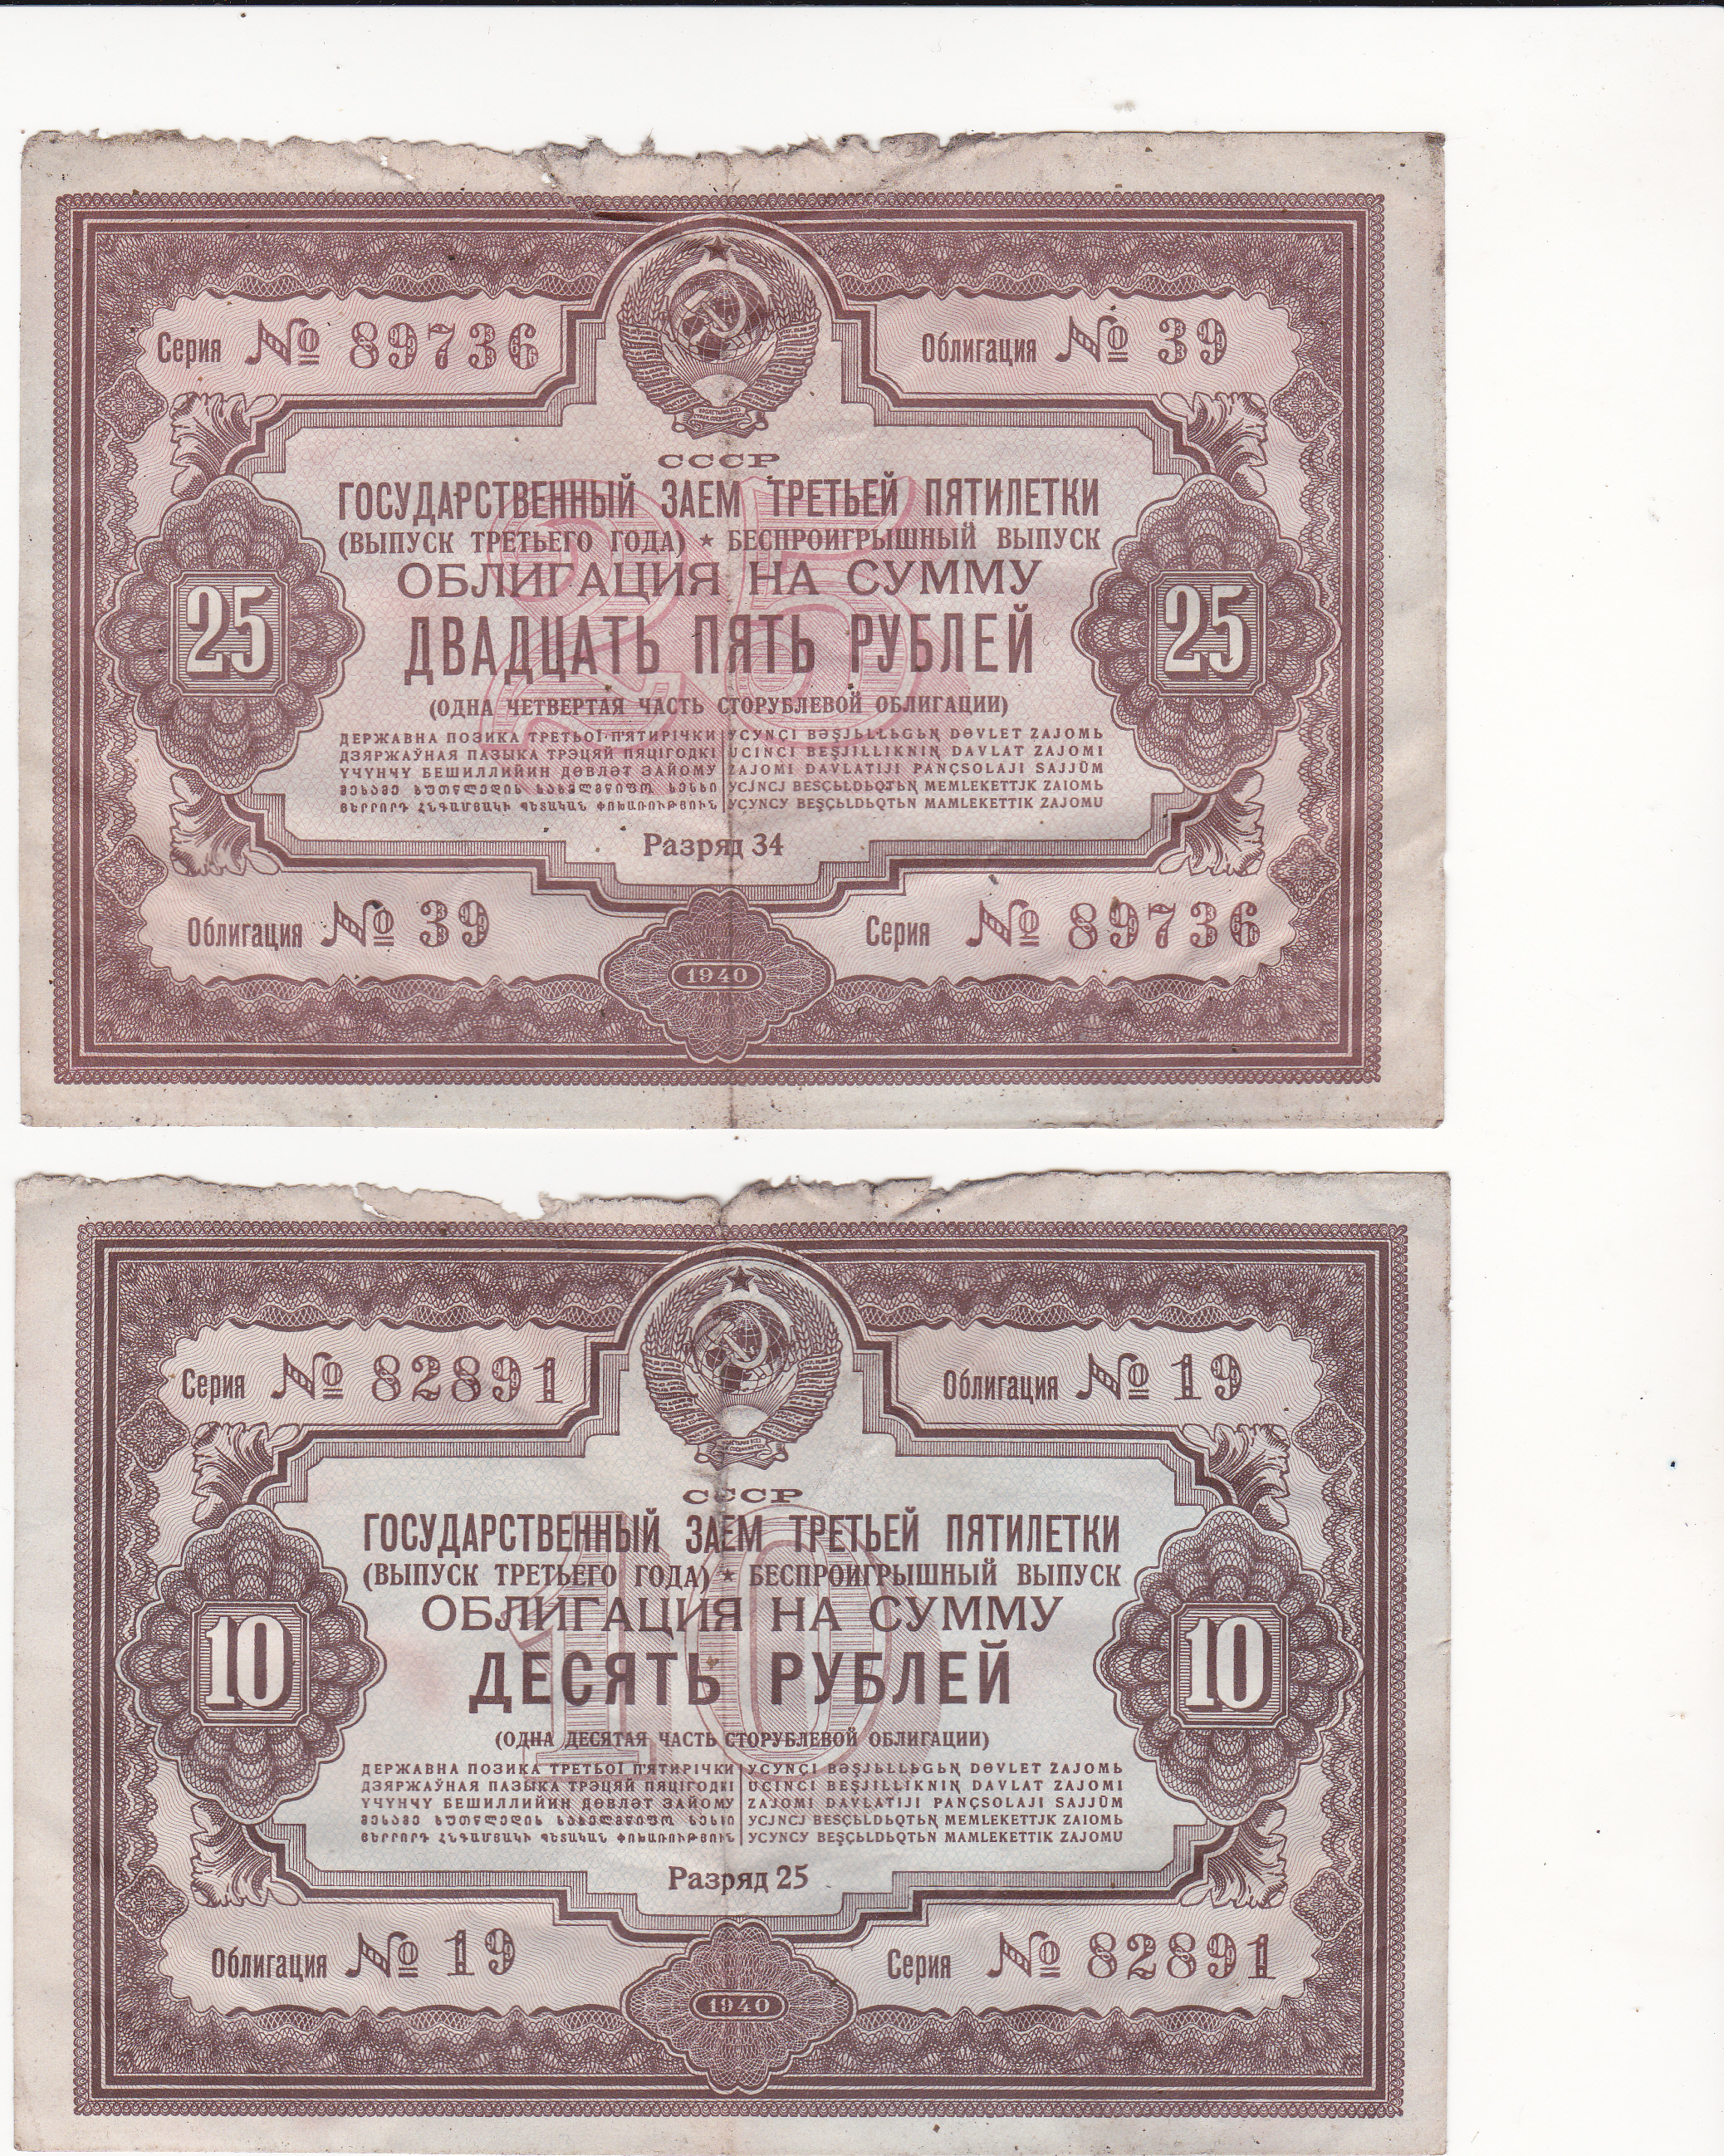 5 рублей облигация. Бумажные 25 рублей 1940 года. Рубль 1940 года. Облигации 2 Пятилетки. СТО рублей 1940.